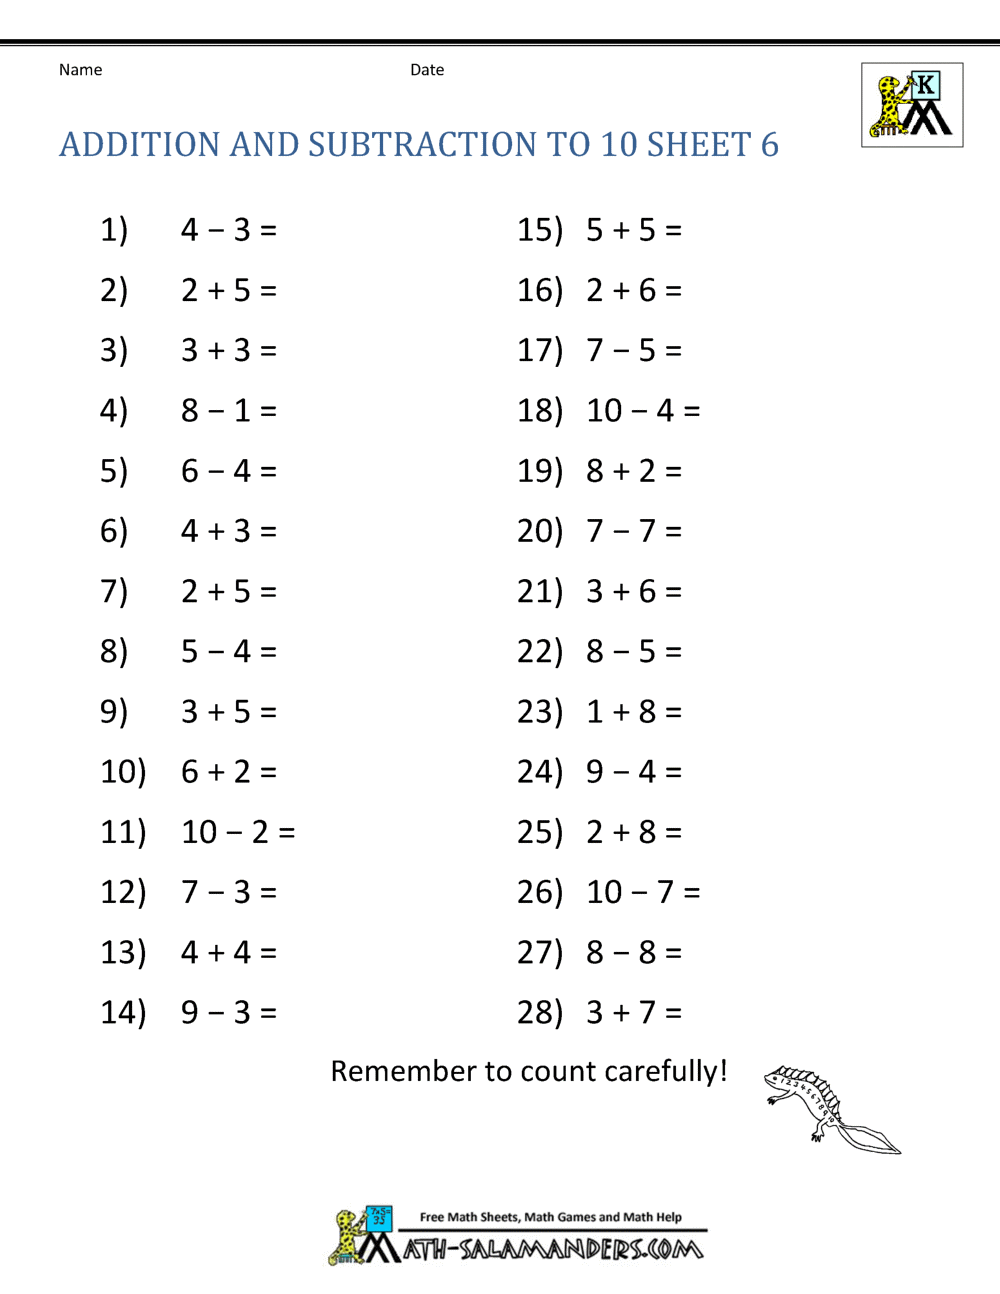 kindergarten number worksheets addition subtraction to 10 6 - Subtracting For Kindergarten